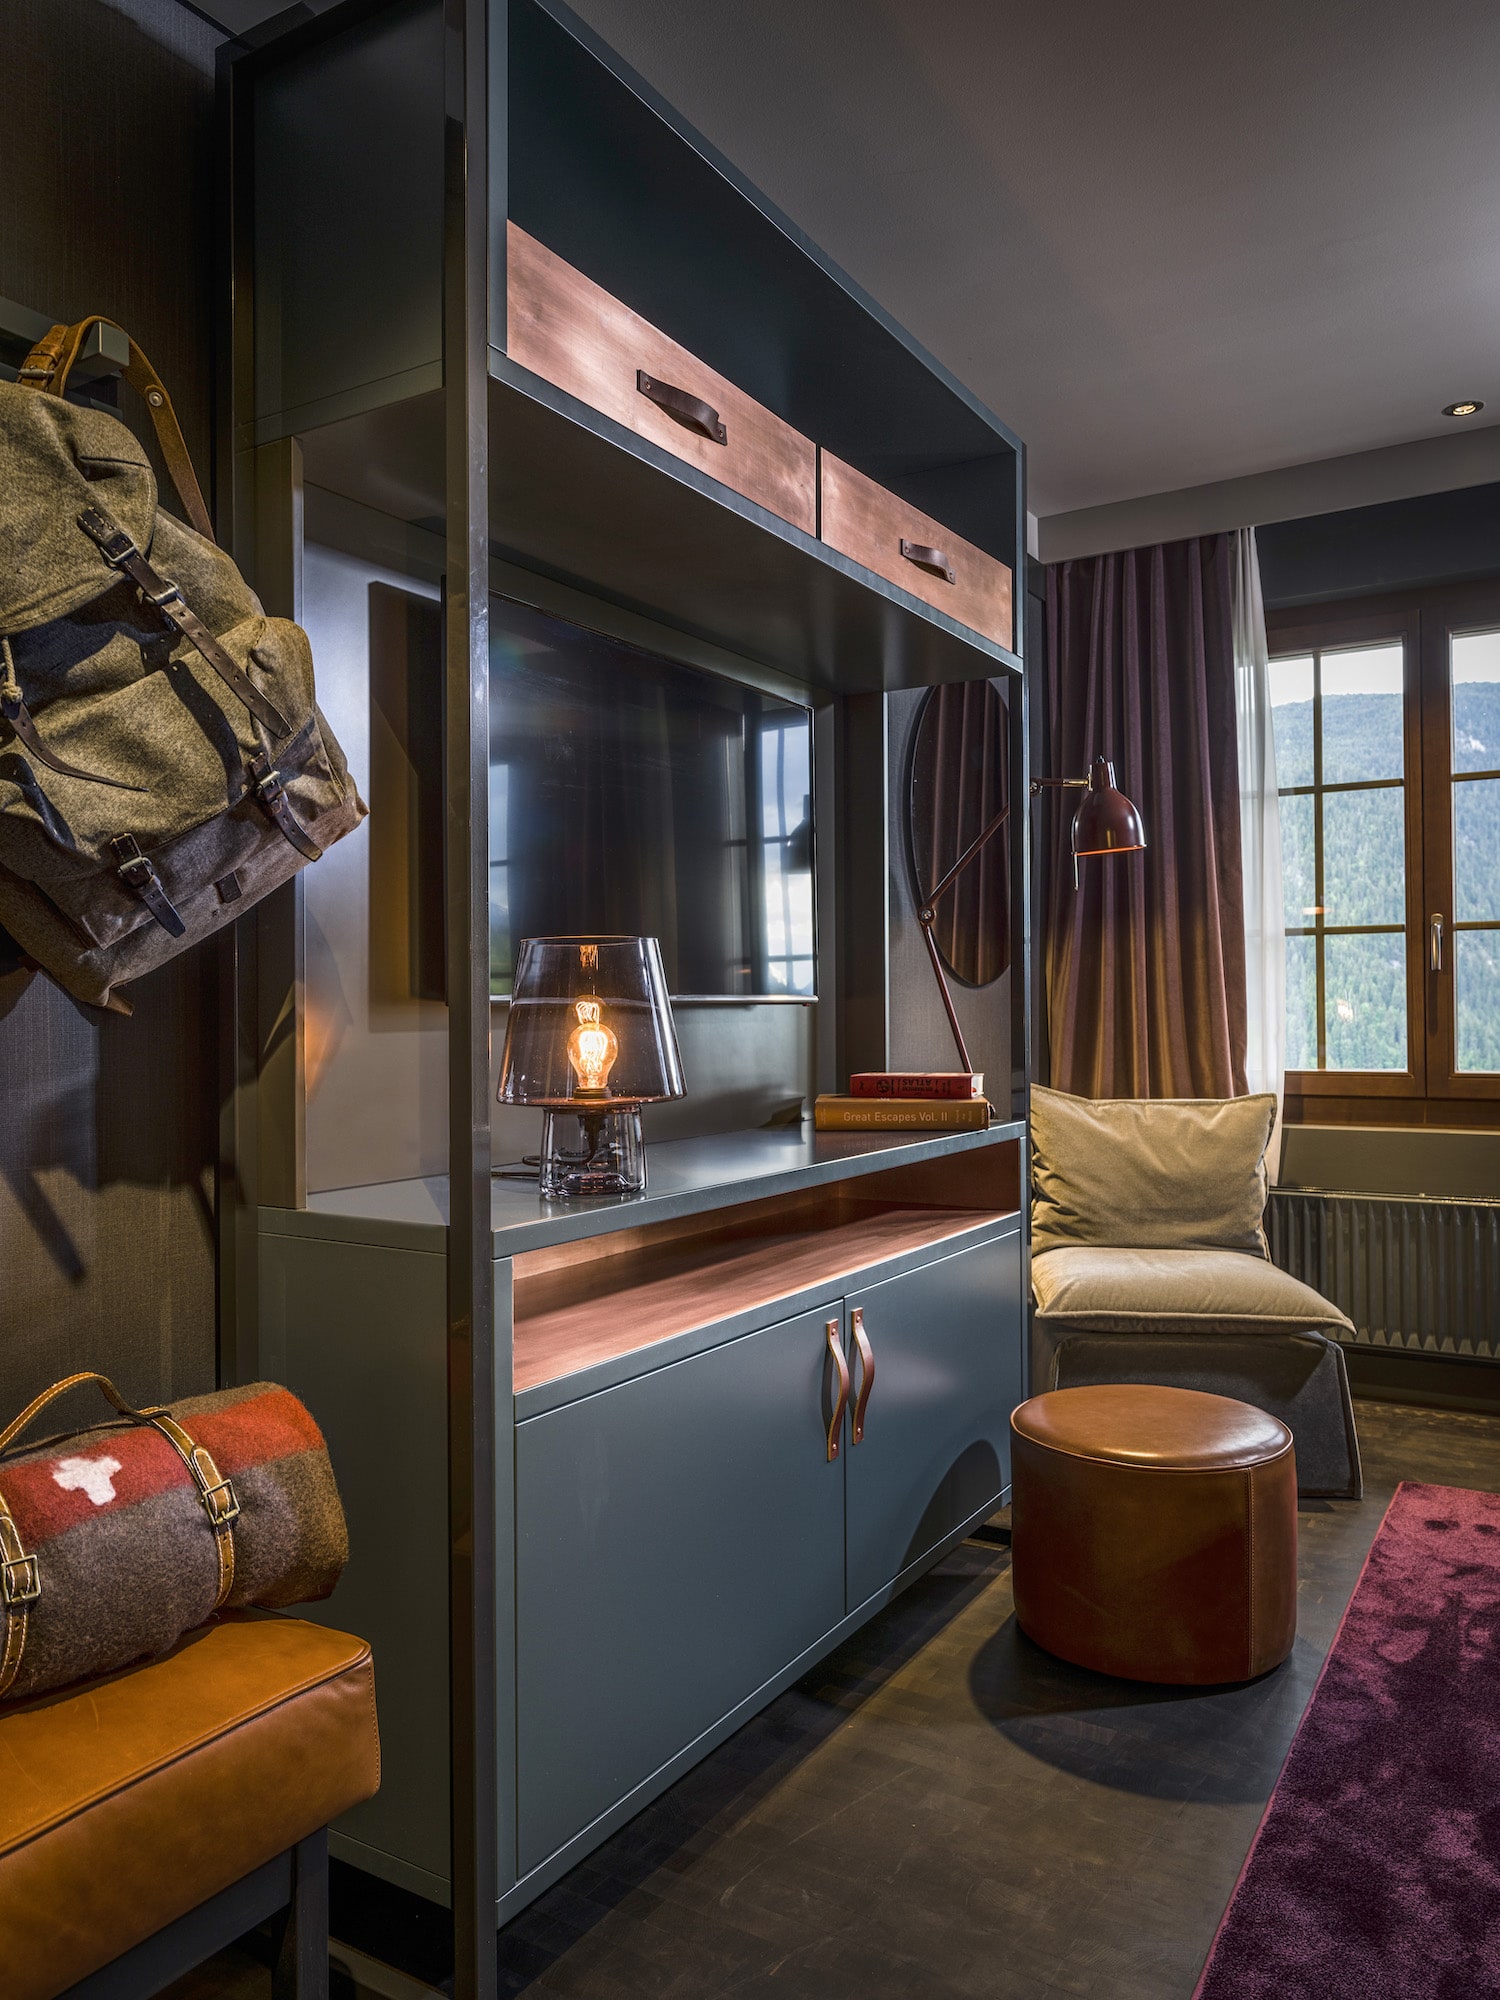 Huus Hotel Gstaad Saanen Switzerland bedroom